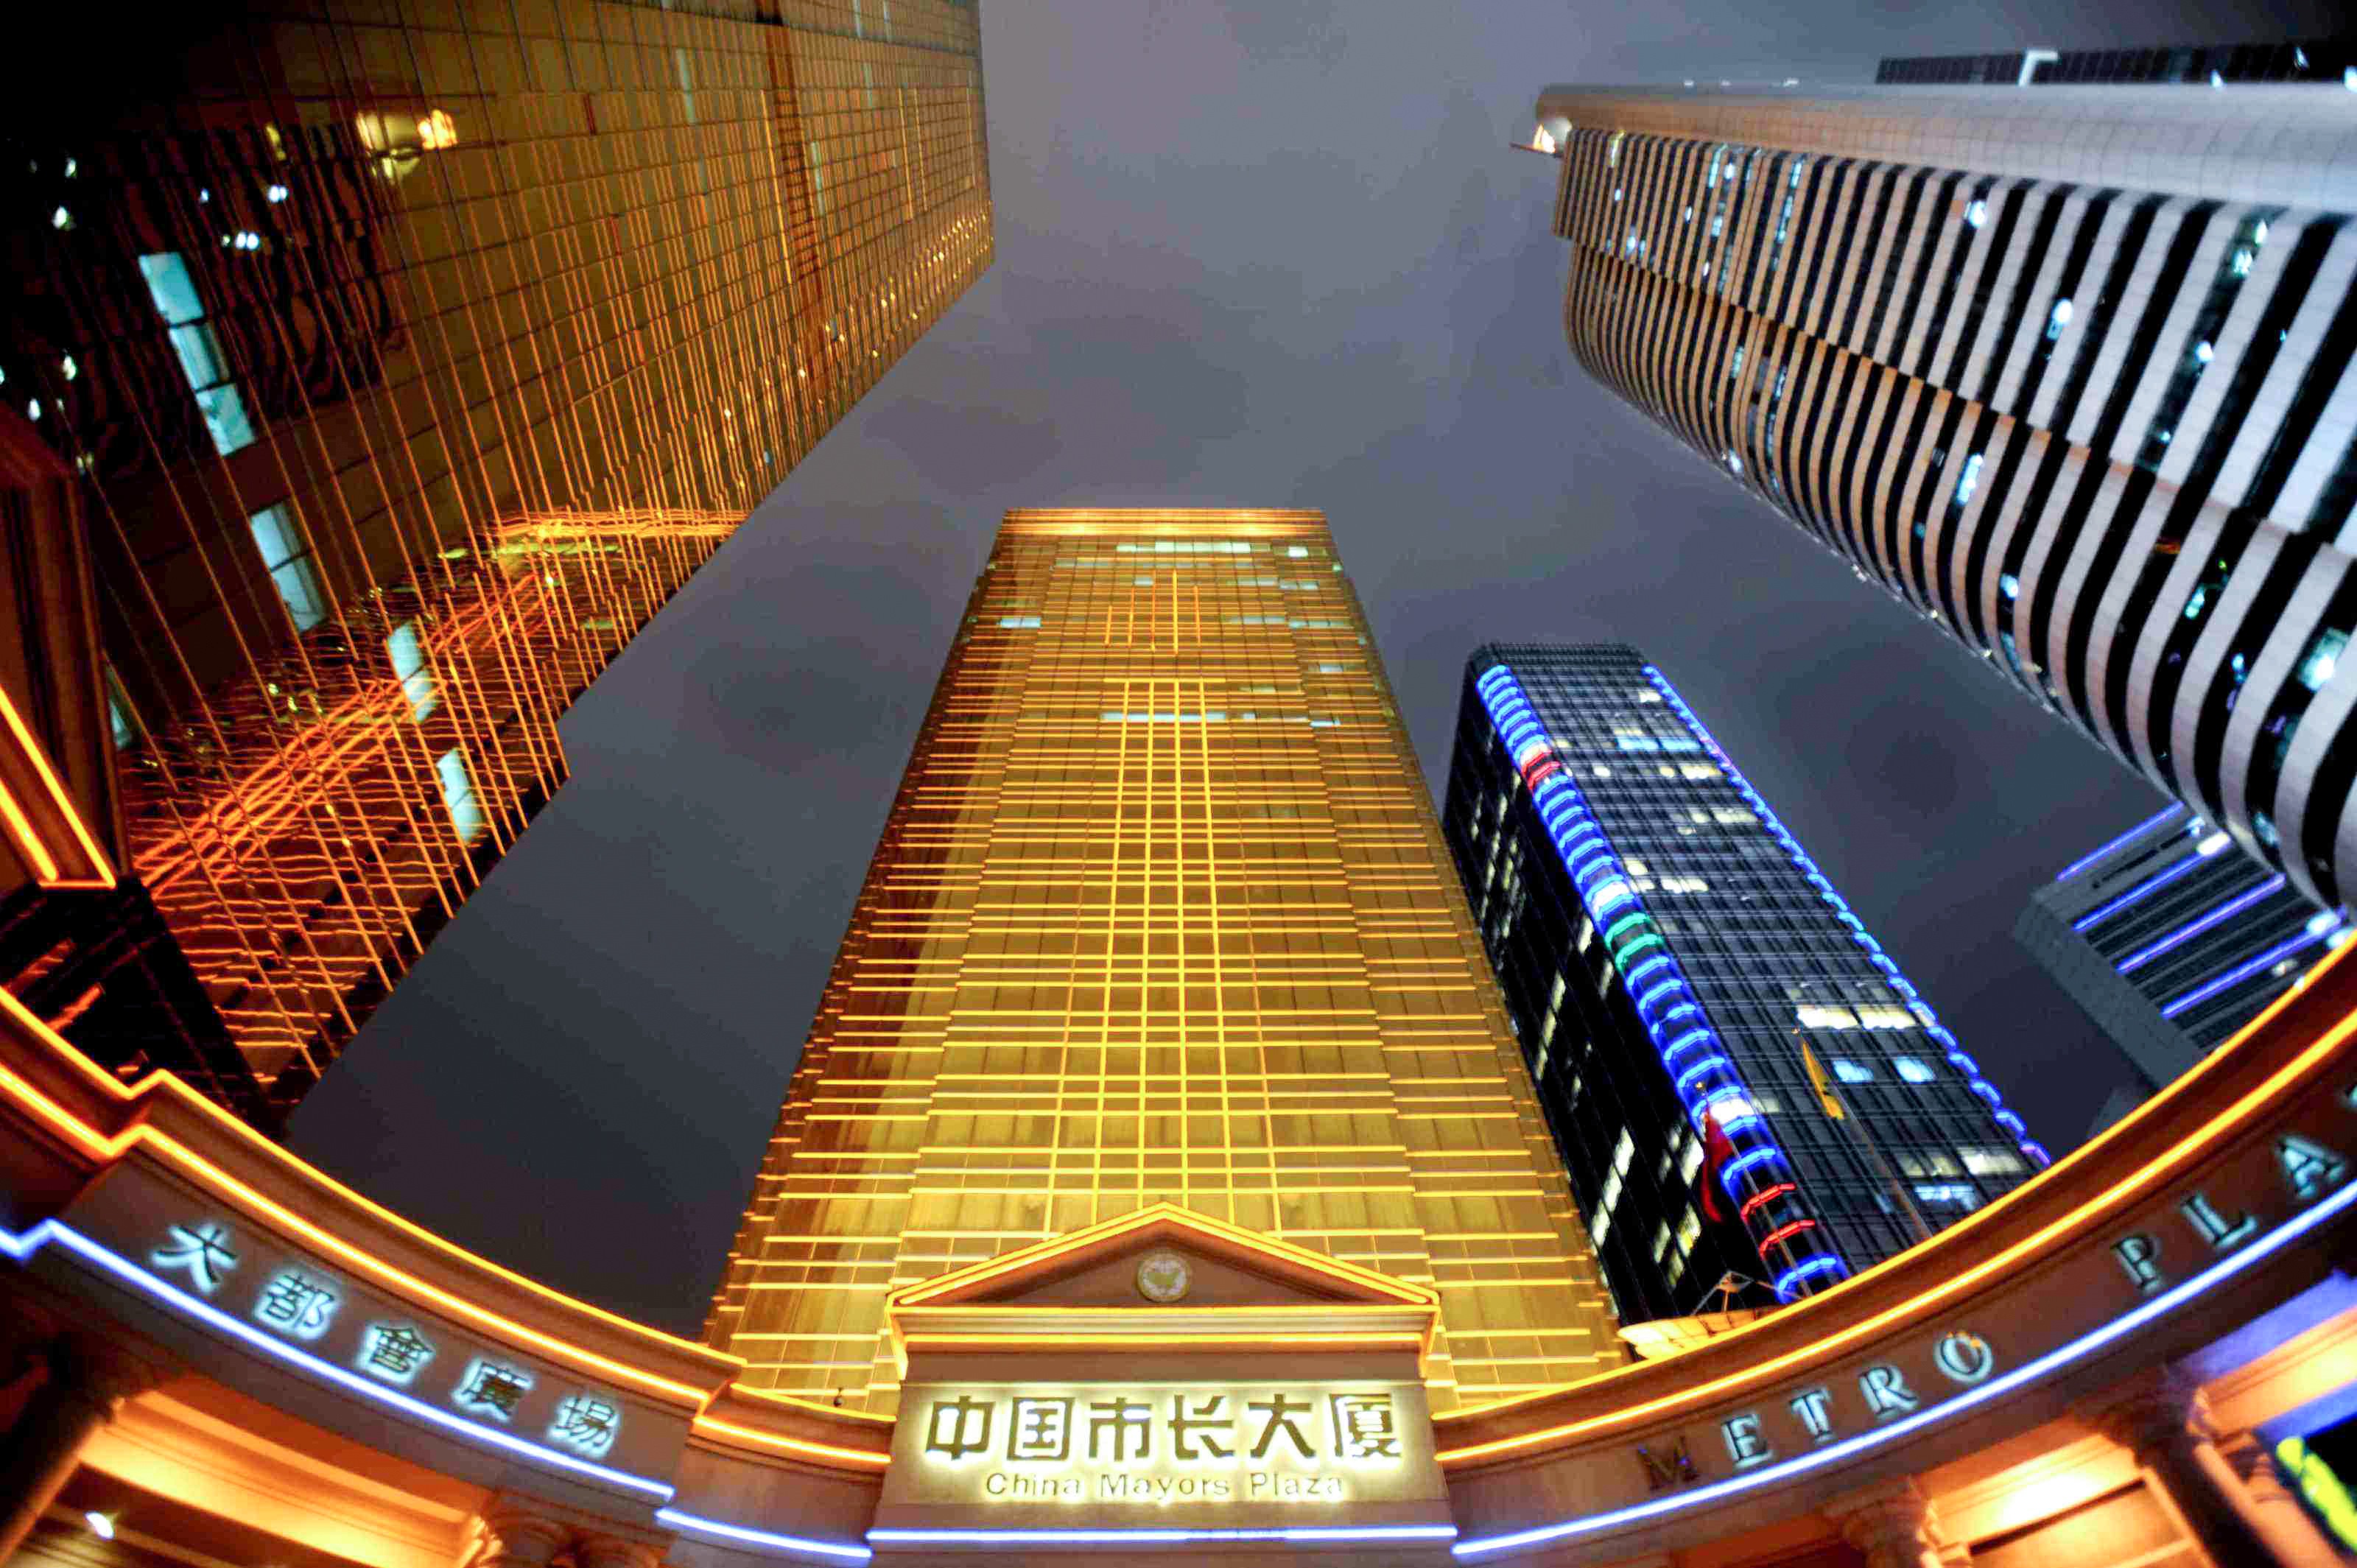 China Mayors Plaza, Guangzhou (3M/S)